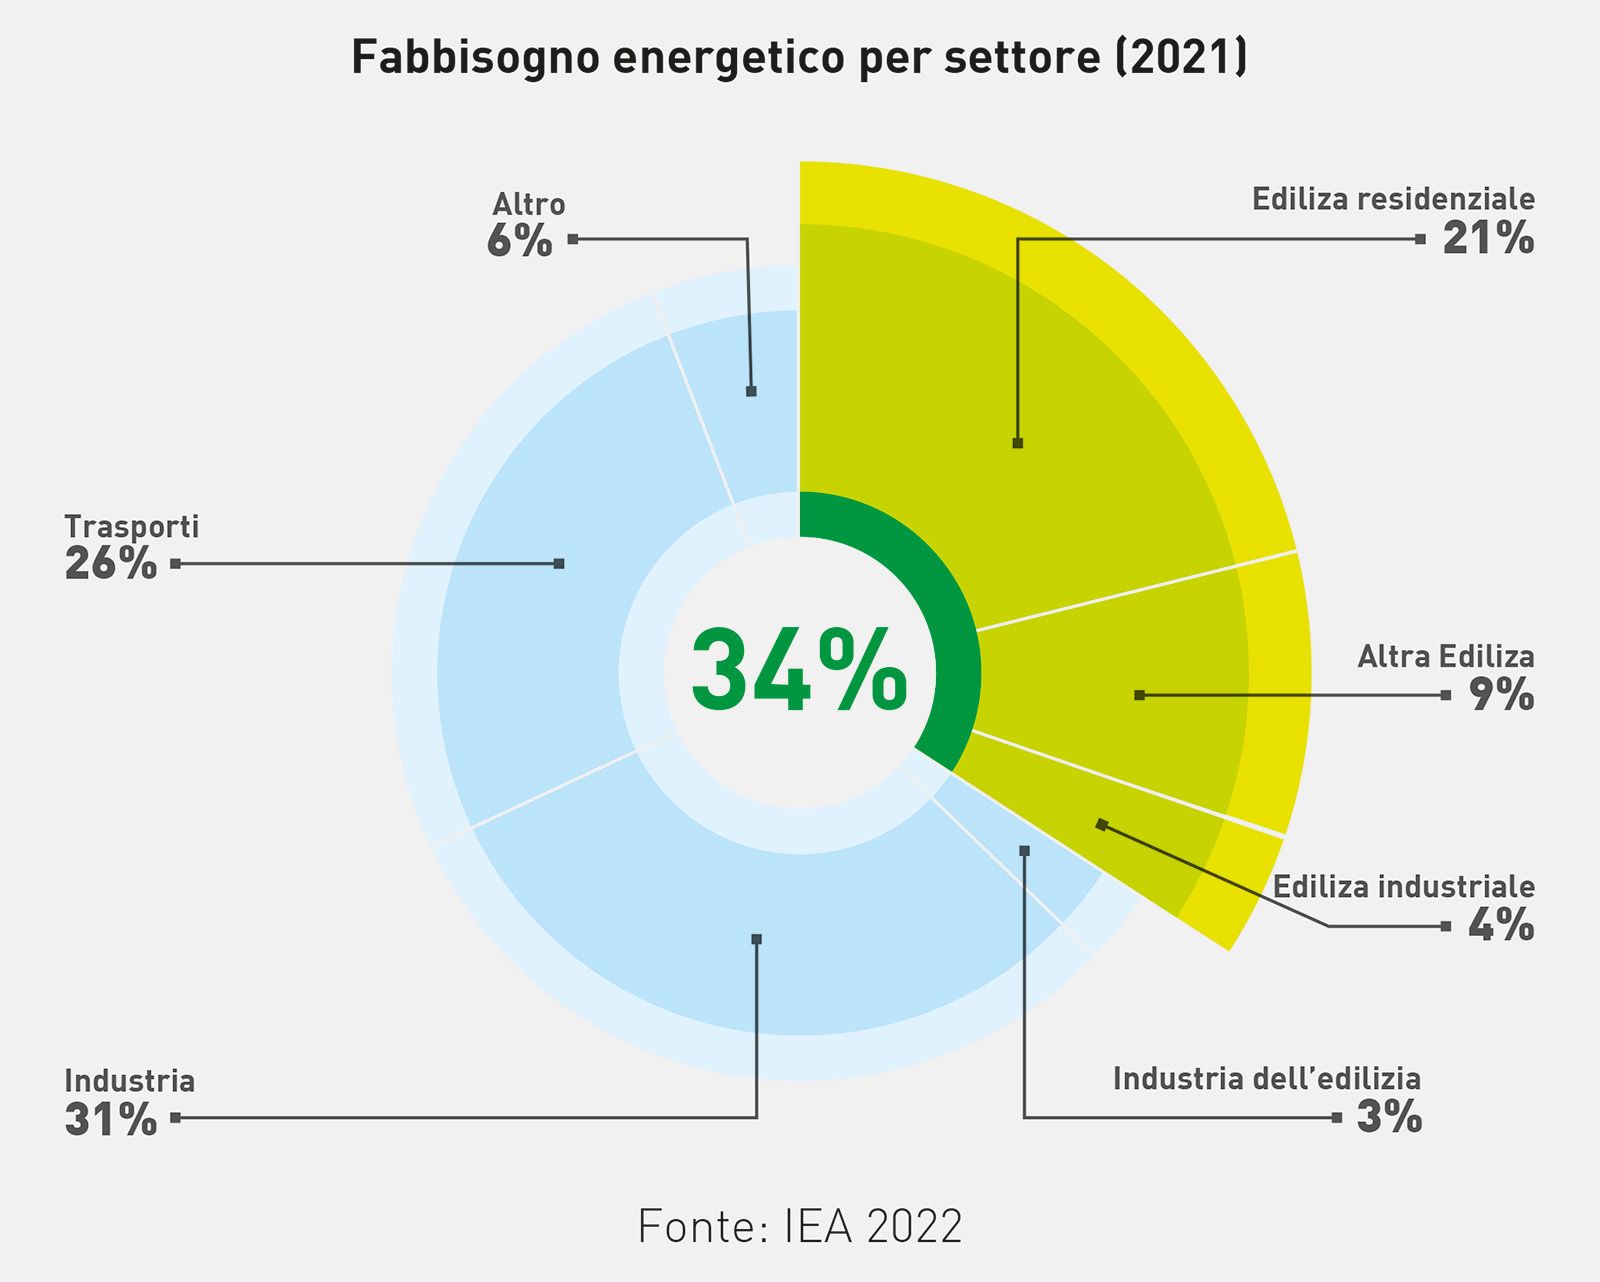 Fabbisogno energetico per settore (dati IEA 2022)